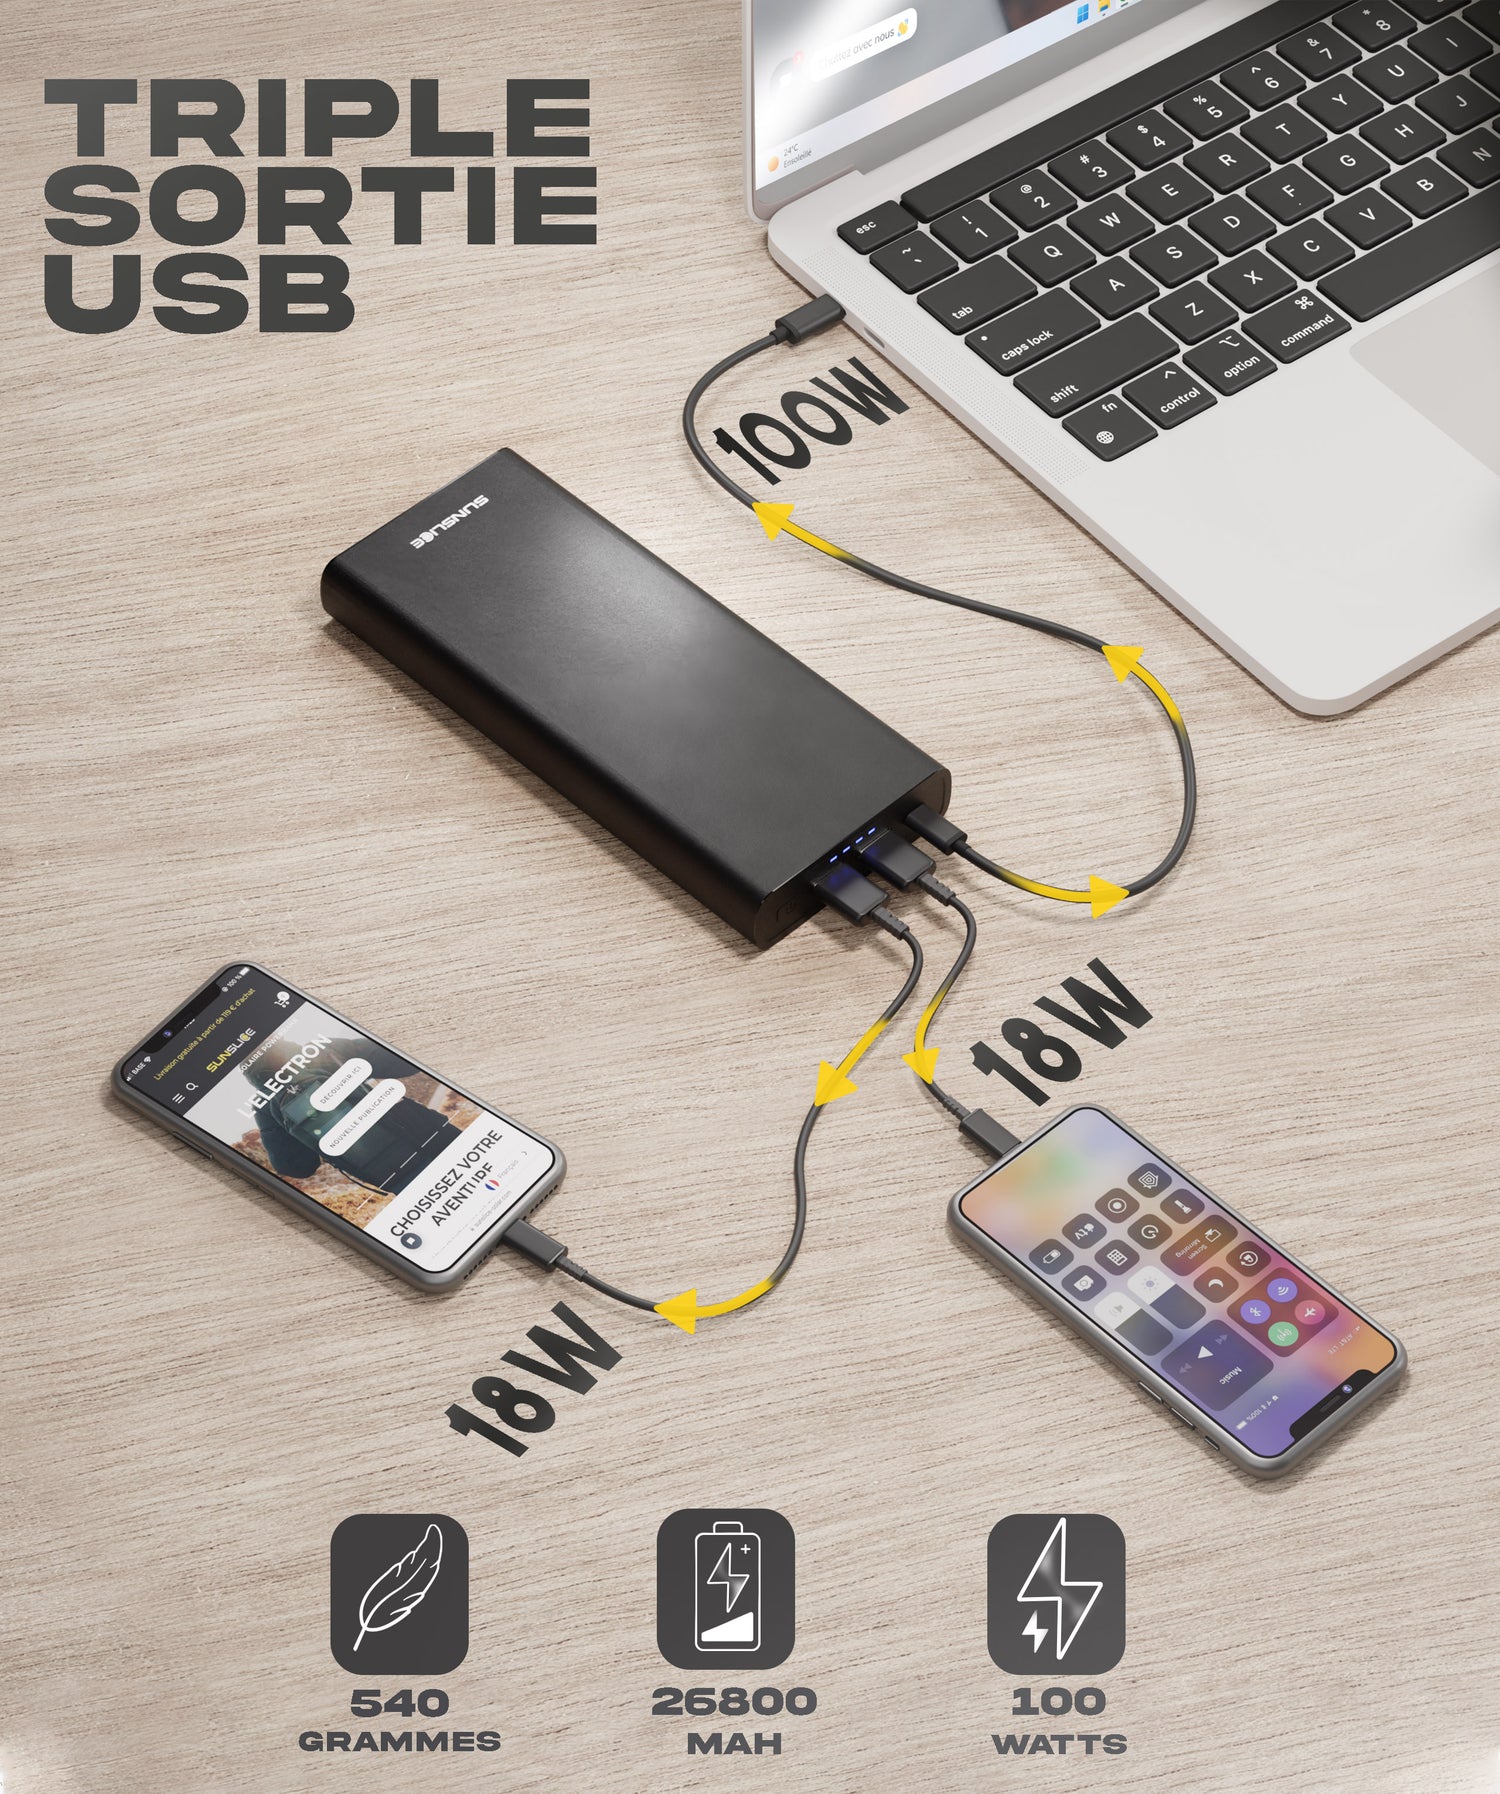 Batterie externe pour ordinateur portable : comment bien choisir?